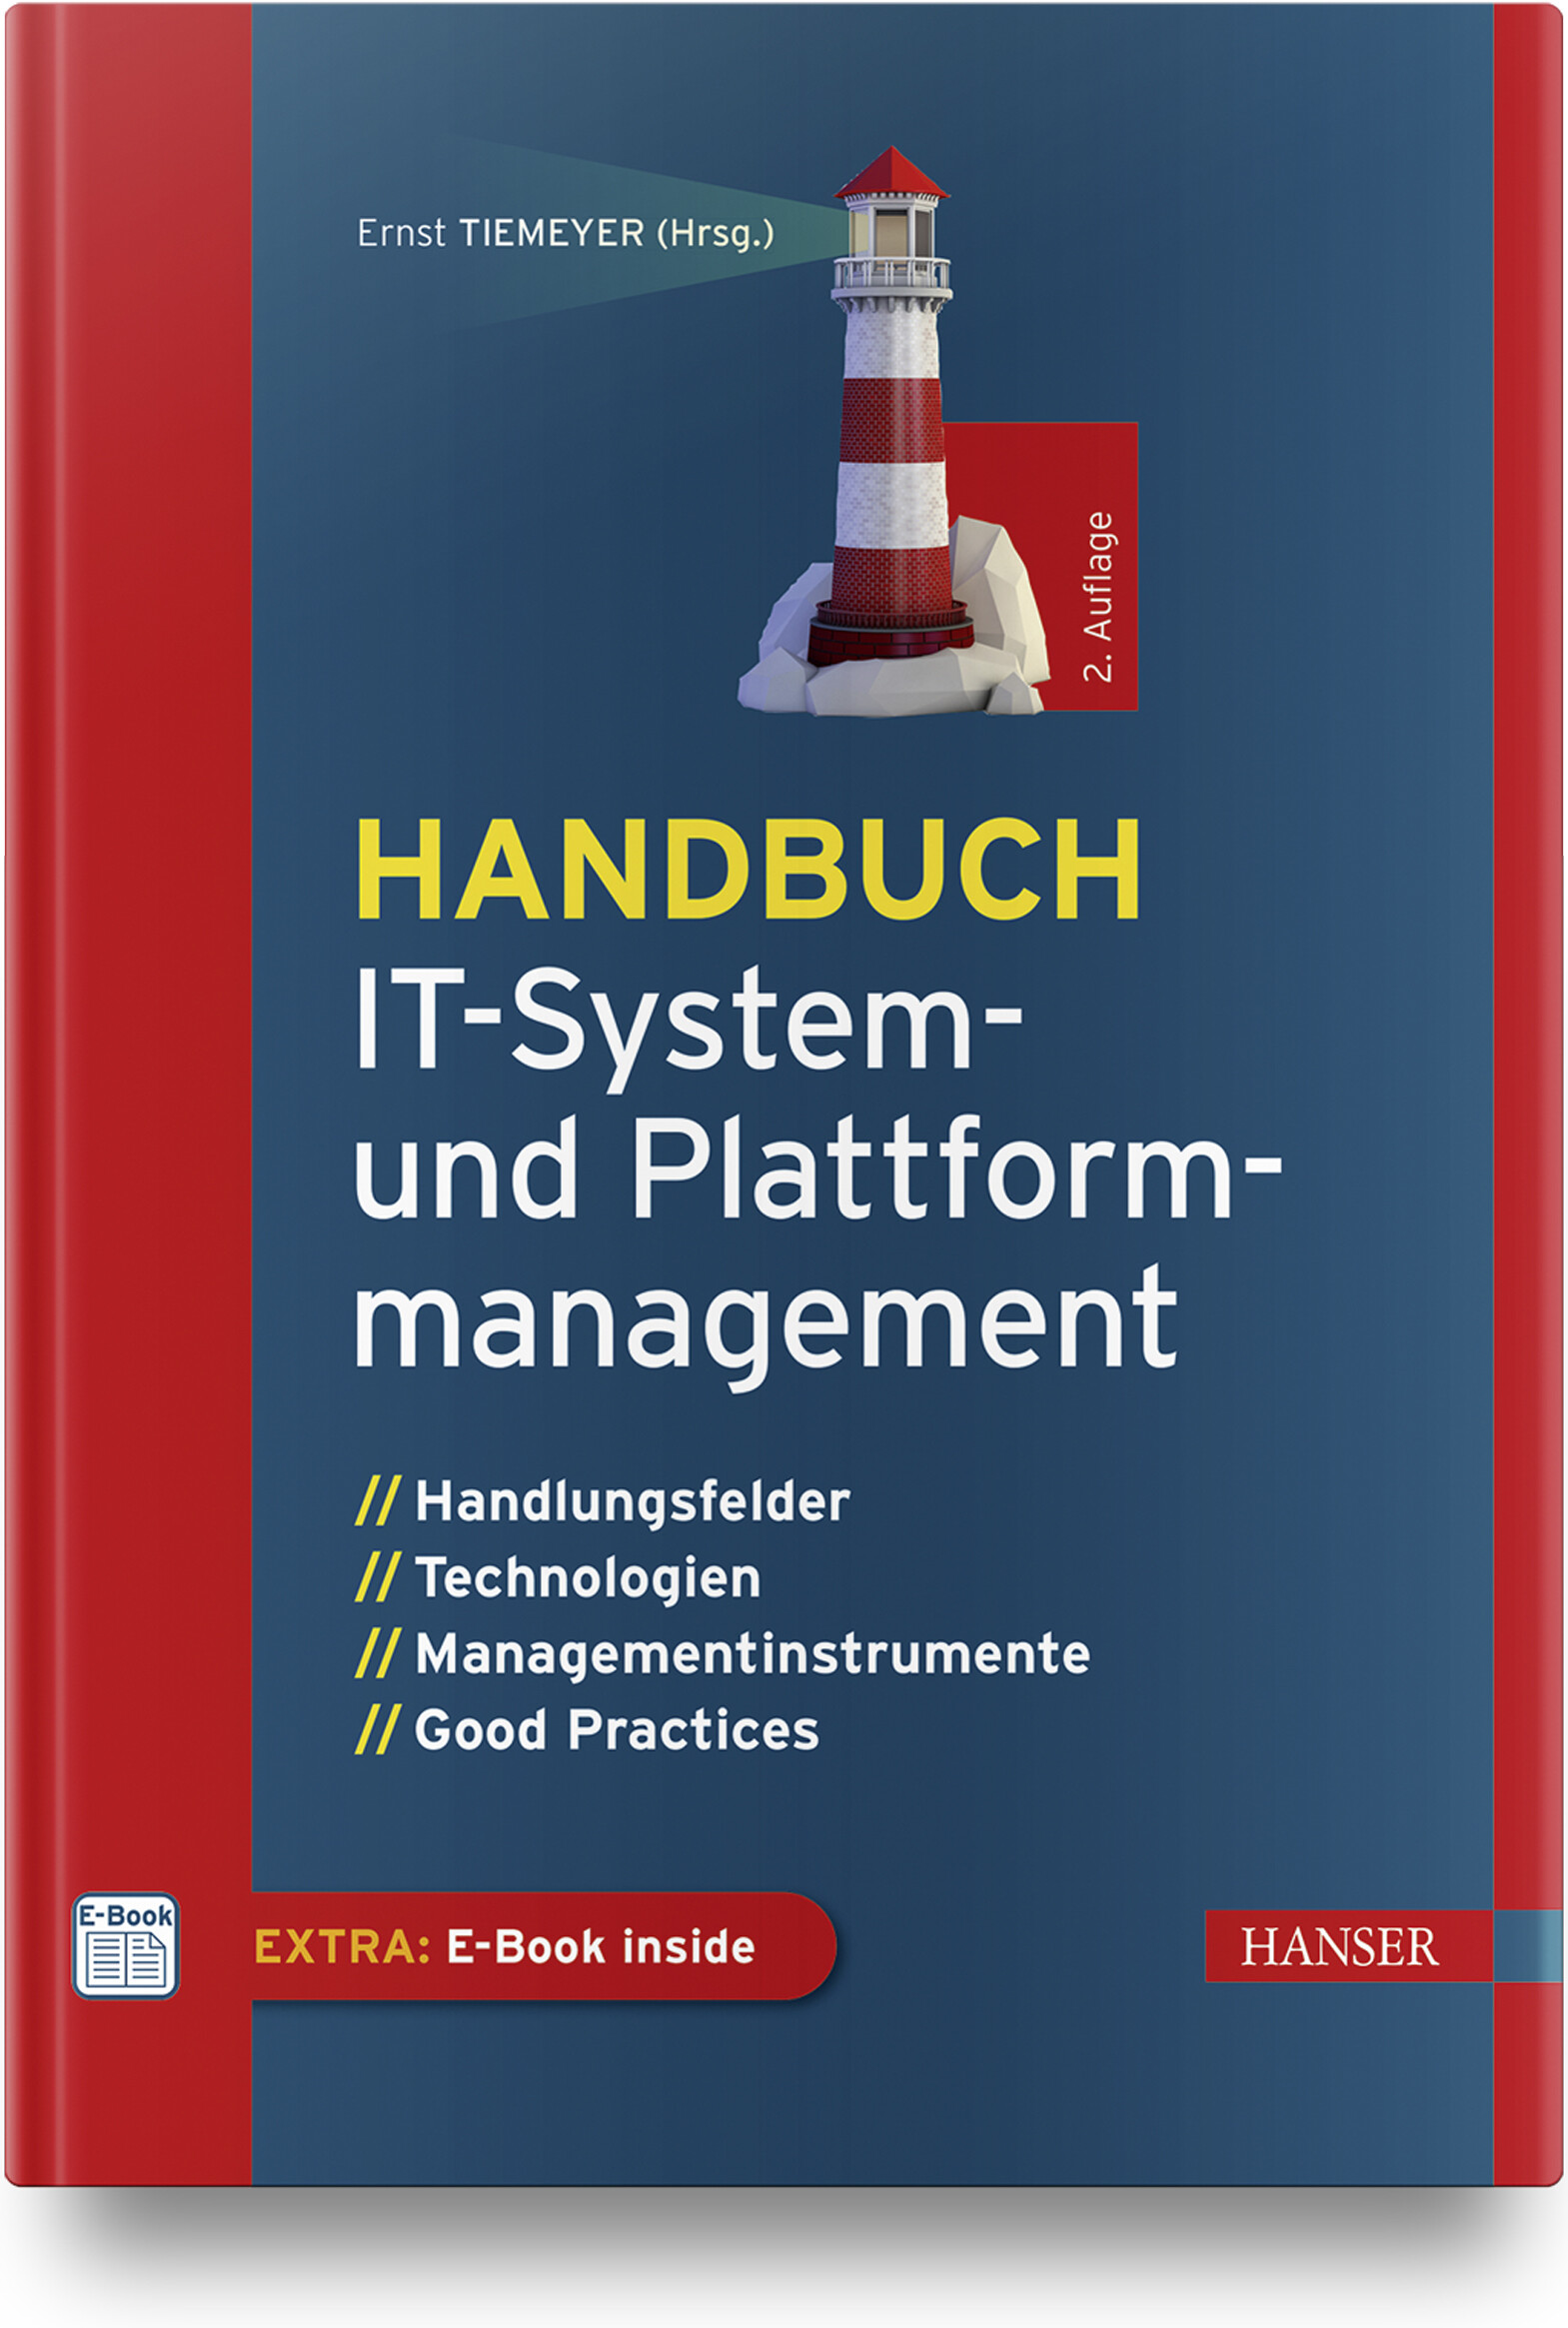 Handbuch IT-System- und Plattformmanagement (2. Auflg.)